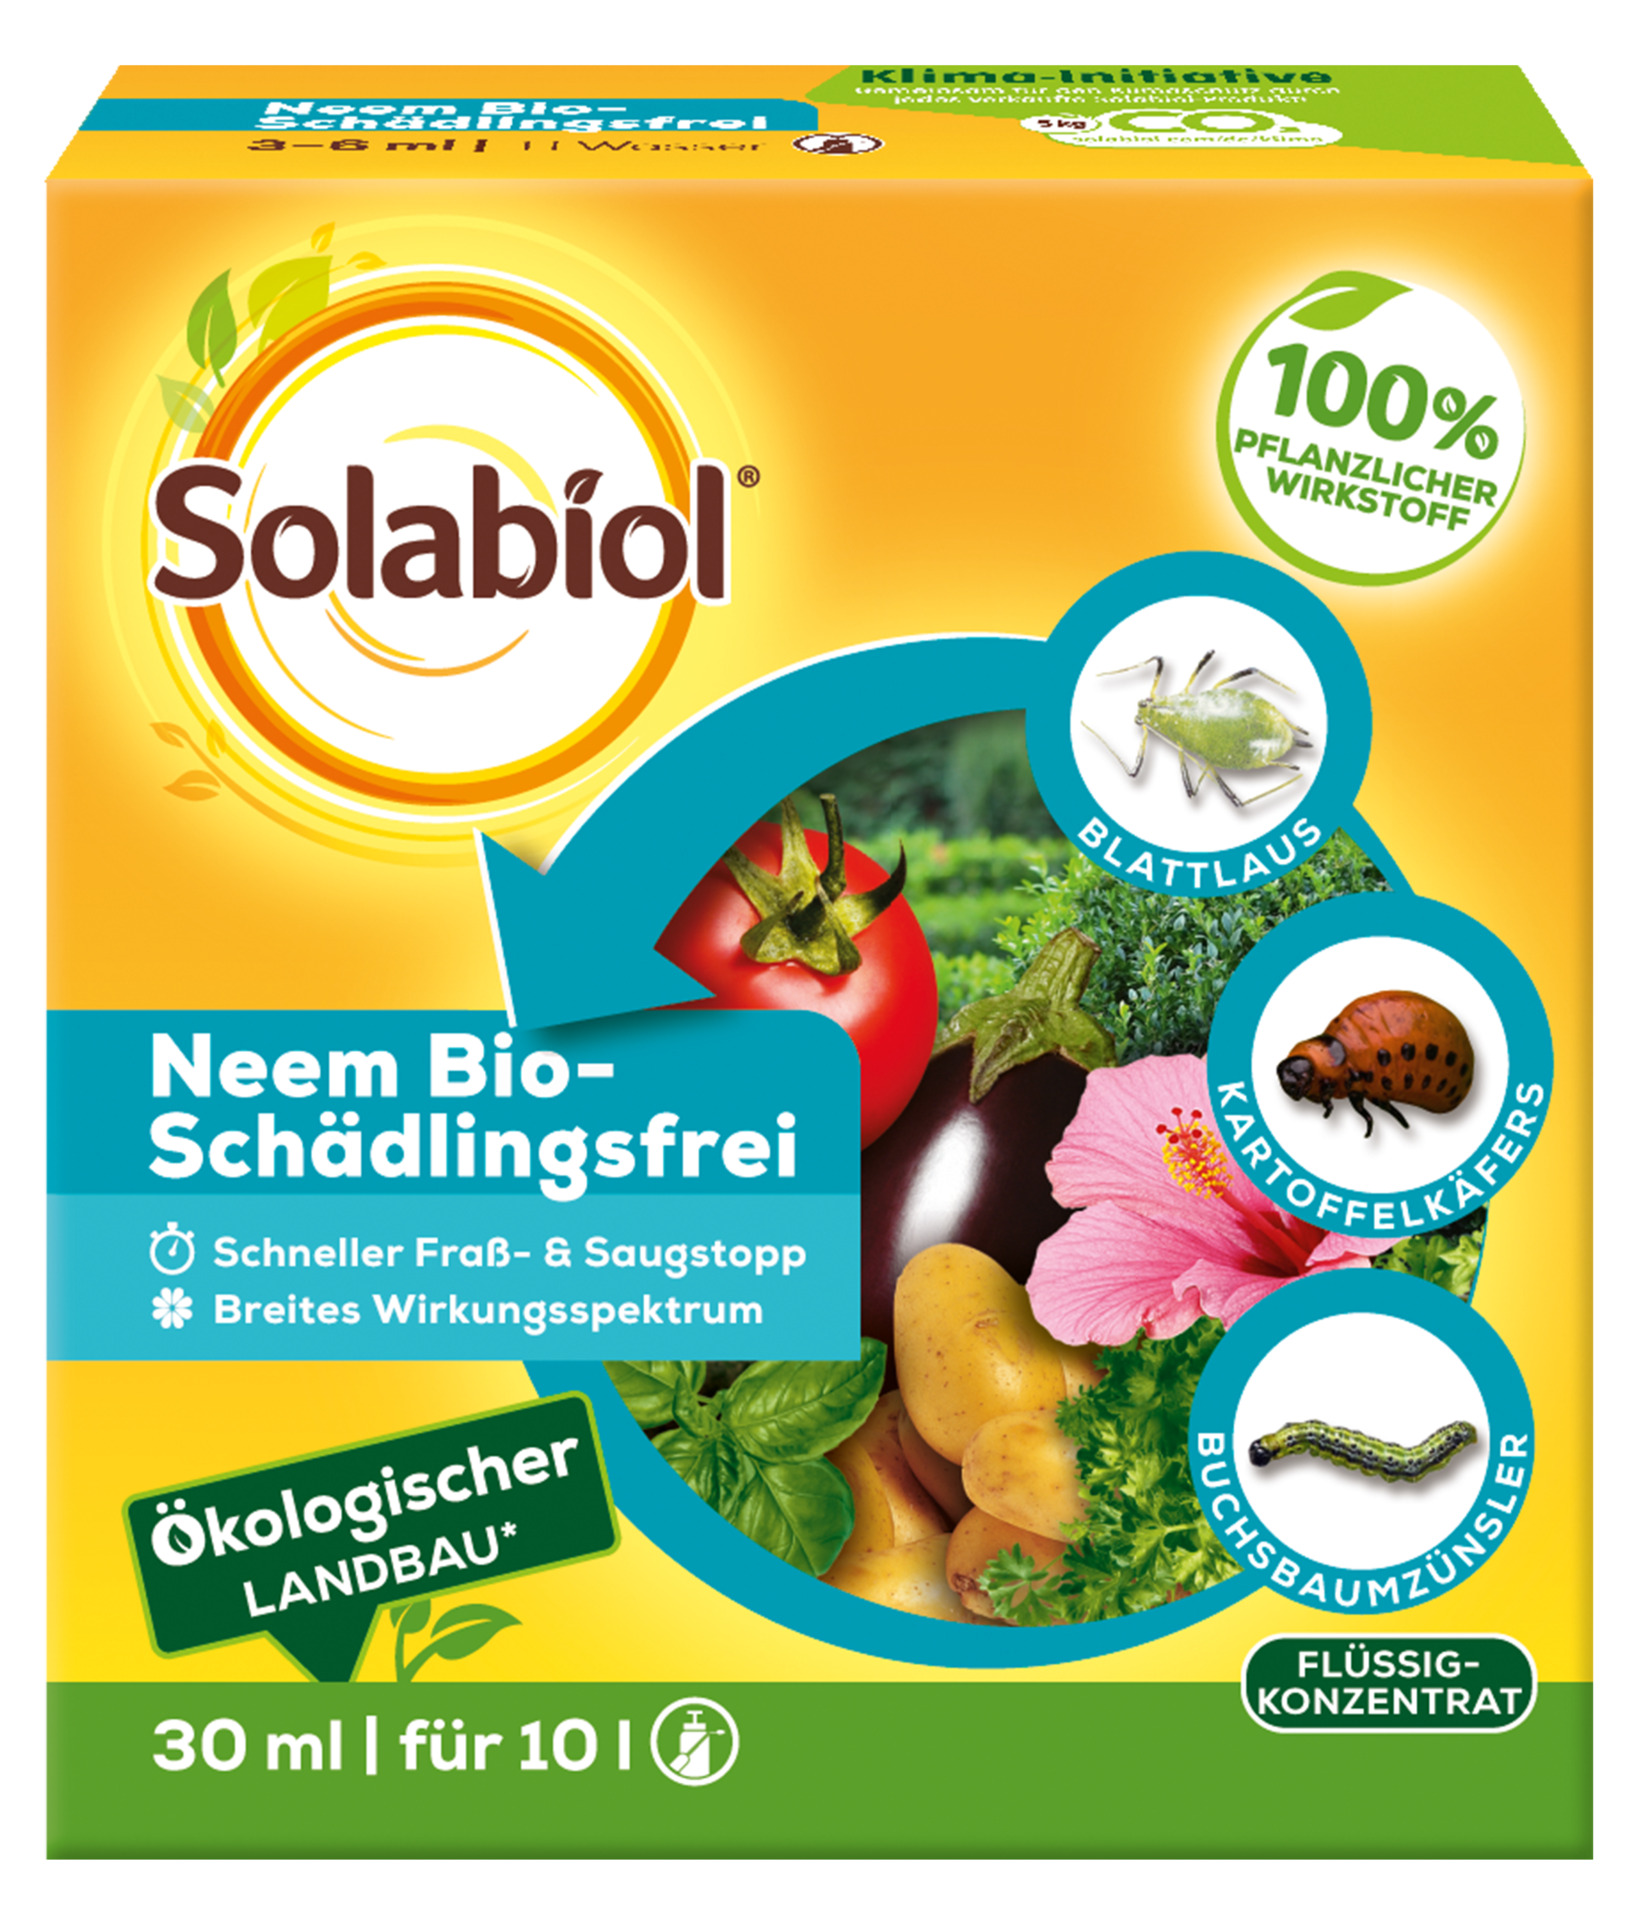 Neem Bio-Schädlingsfrei, 30ml